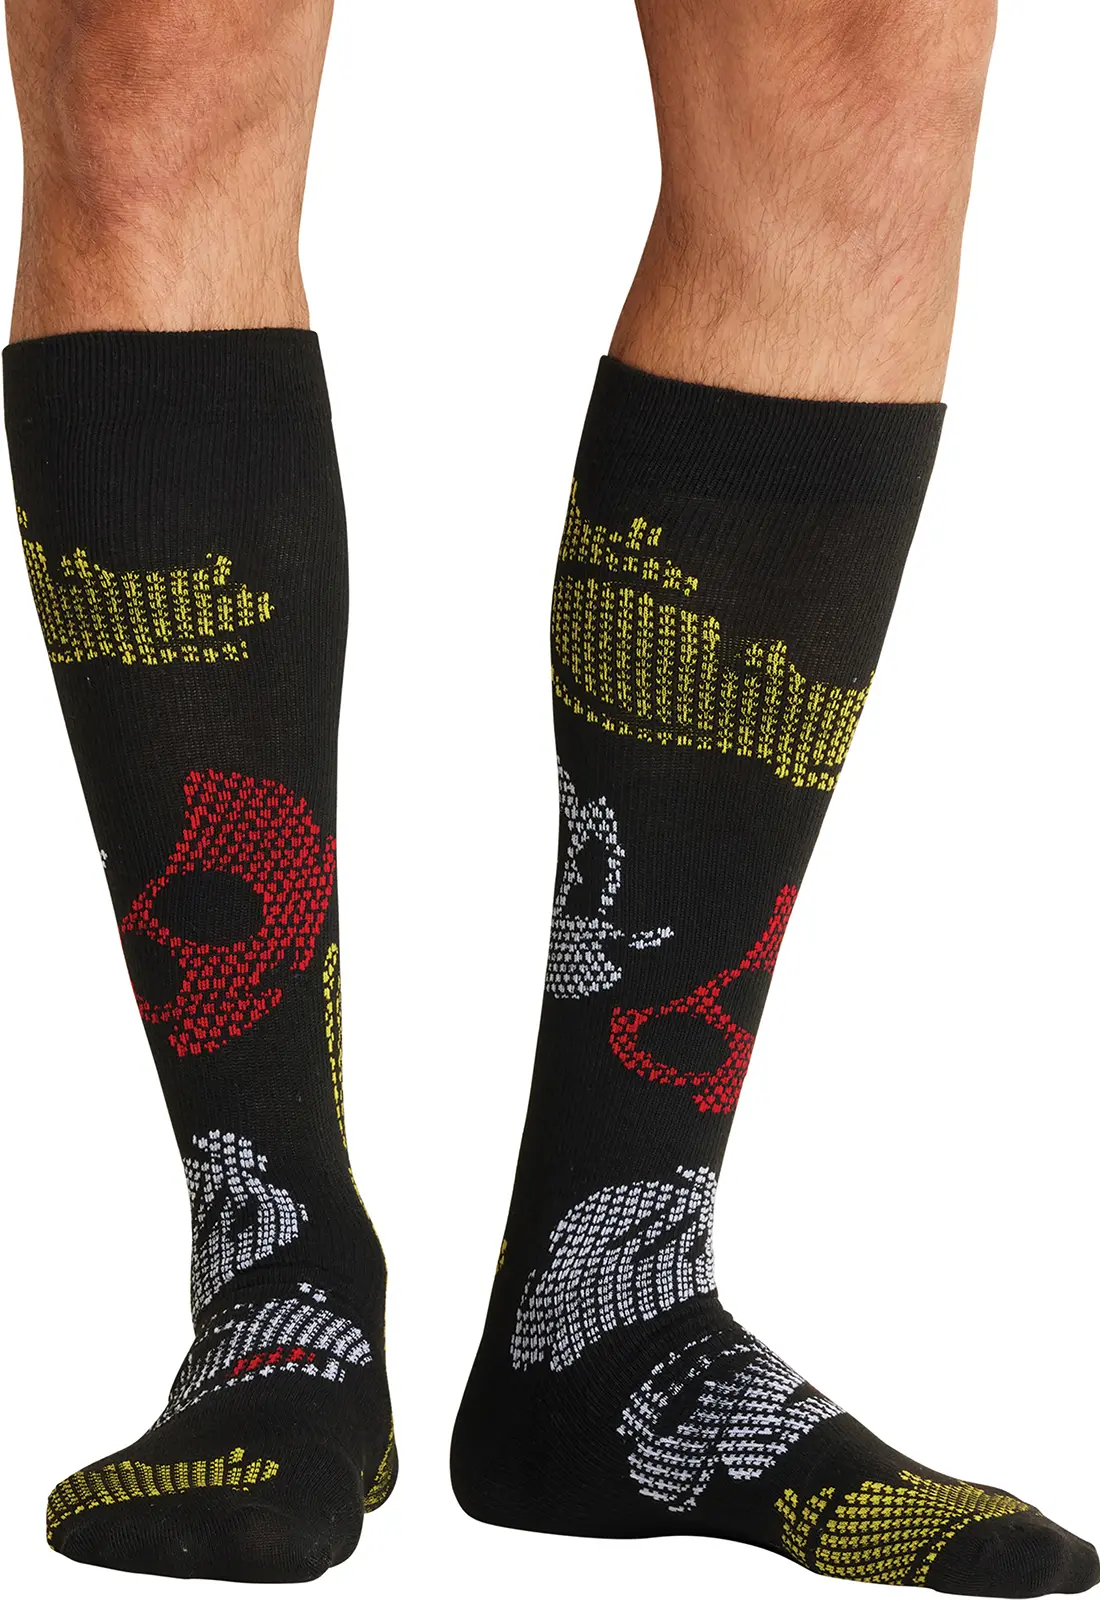 Men's 10-15mmHg Support Socks